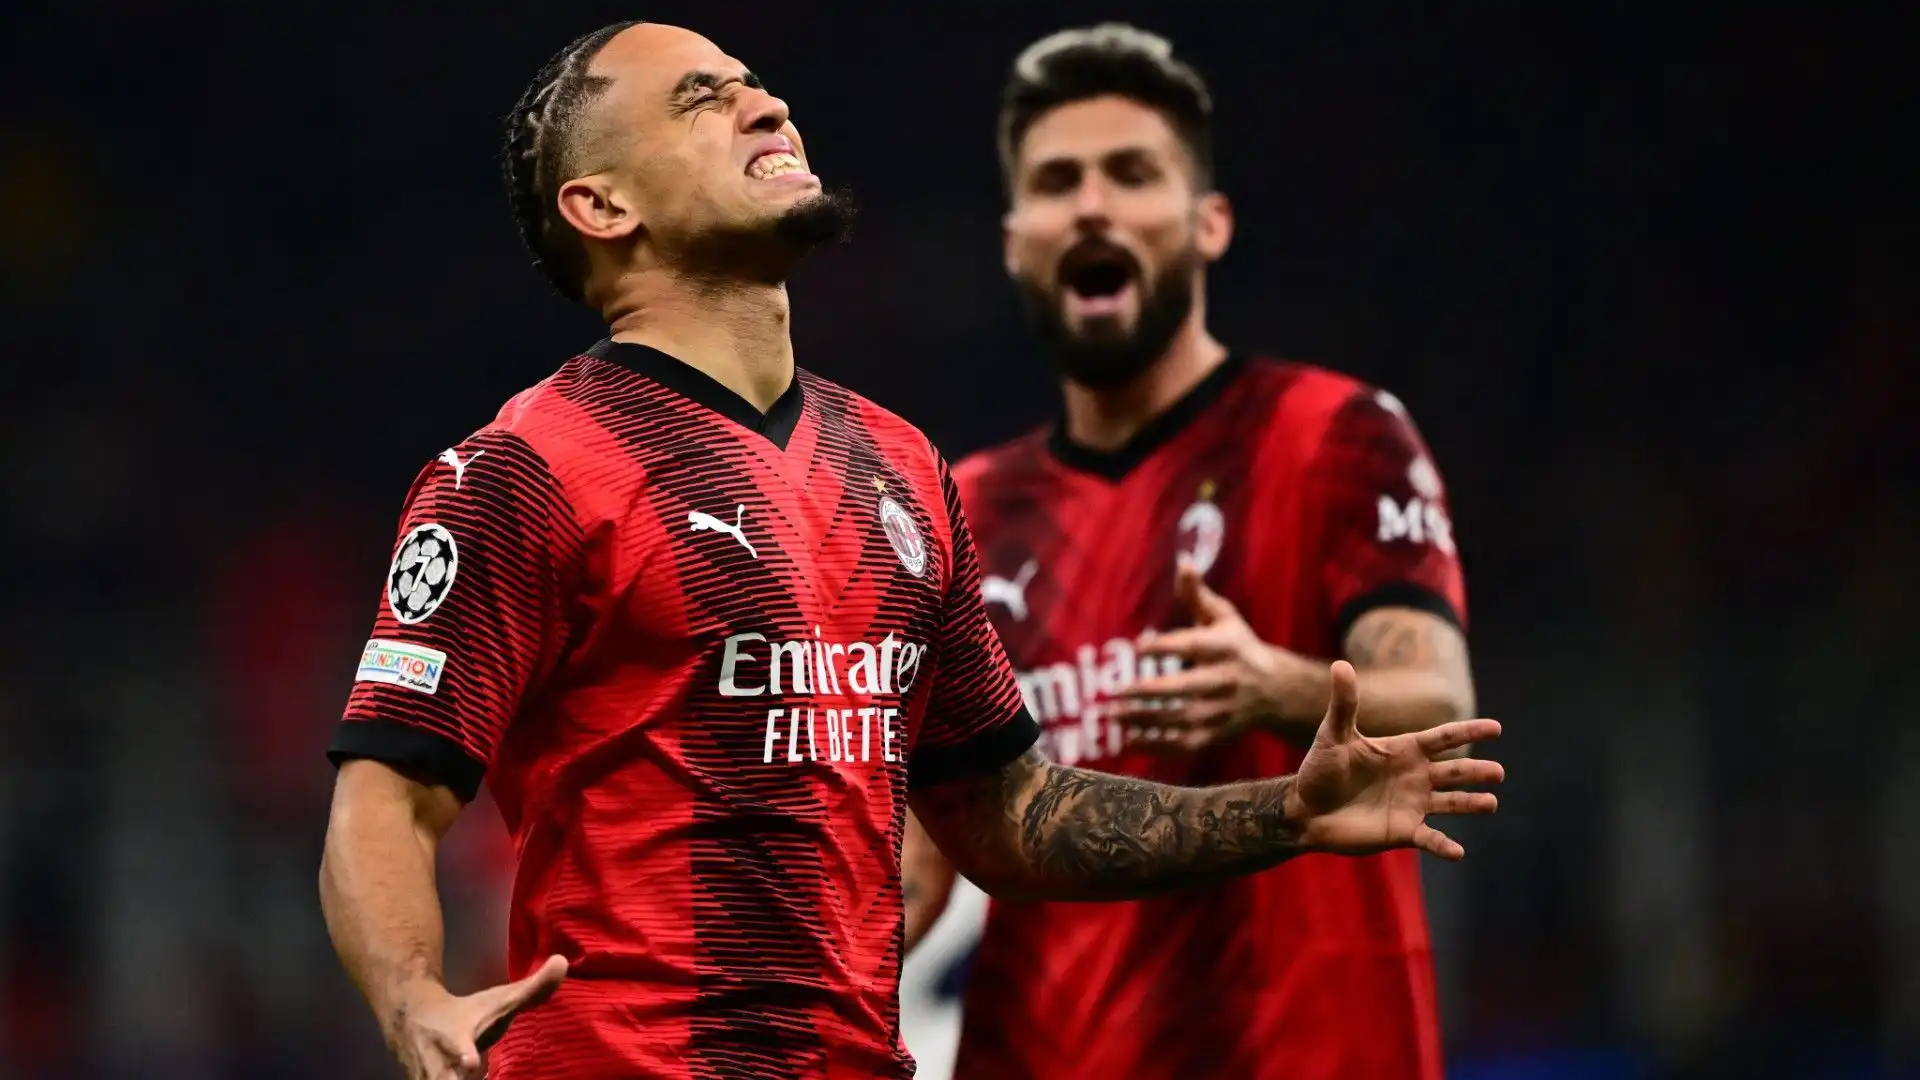 "Il Milan è troppo altalenante, a una buona prestazione come quella contro il PSG fa seguire una prova negativa come quella contro il Lecce"